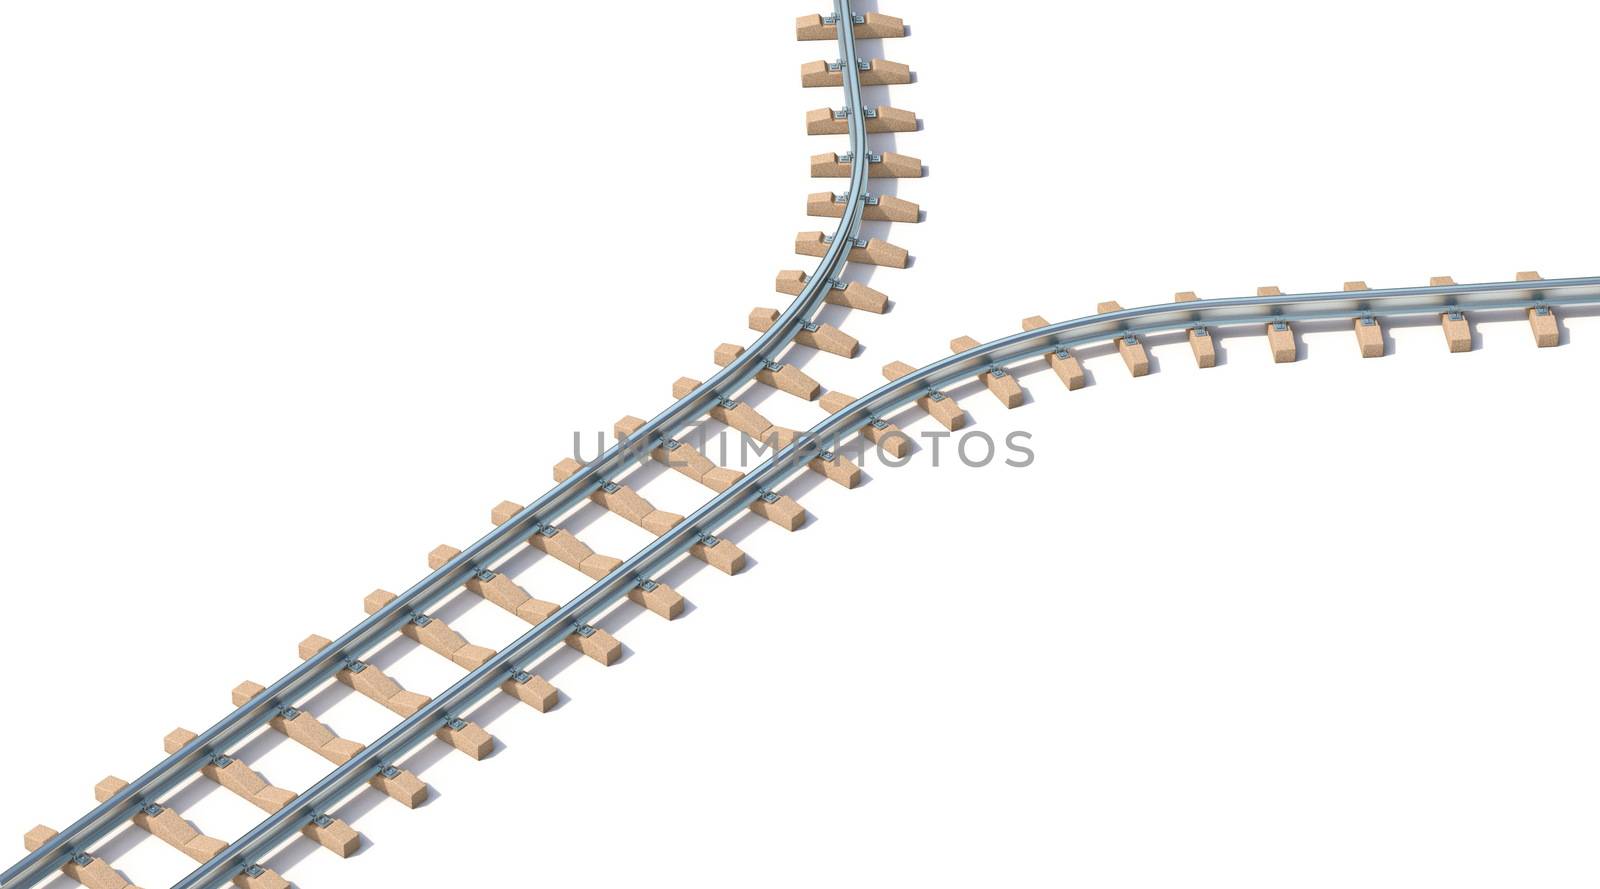 Split railway 3D render illustration isolated on white background